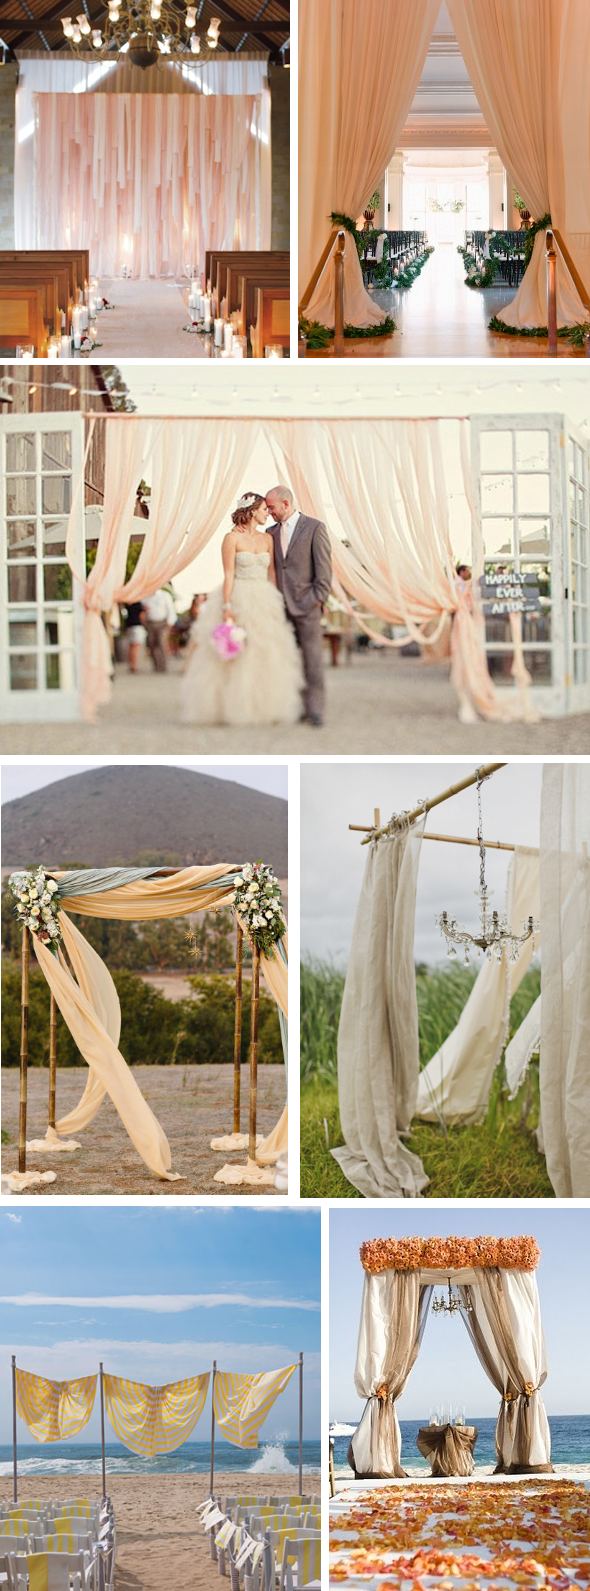 wedding ceremony arches